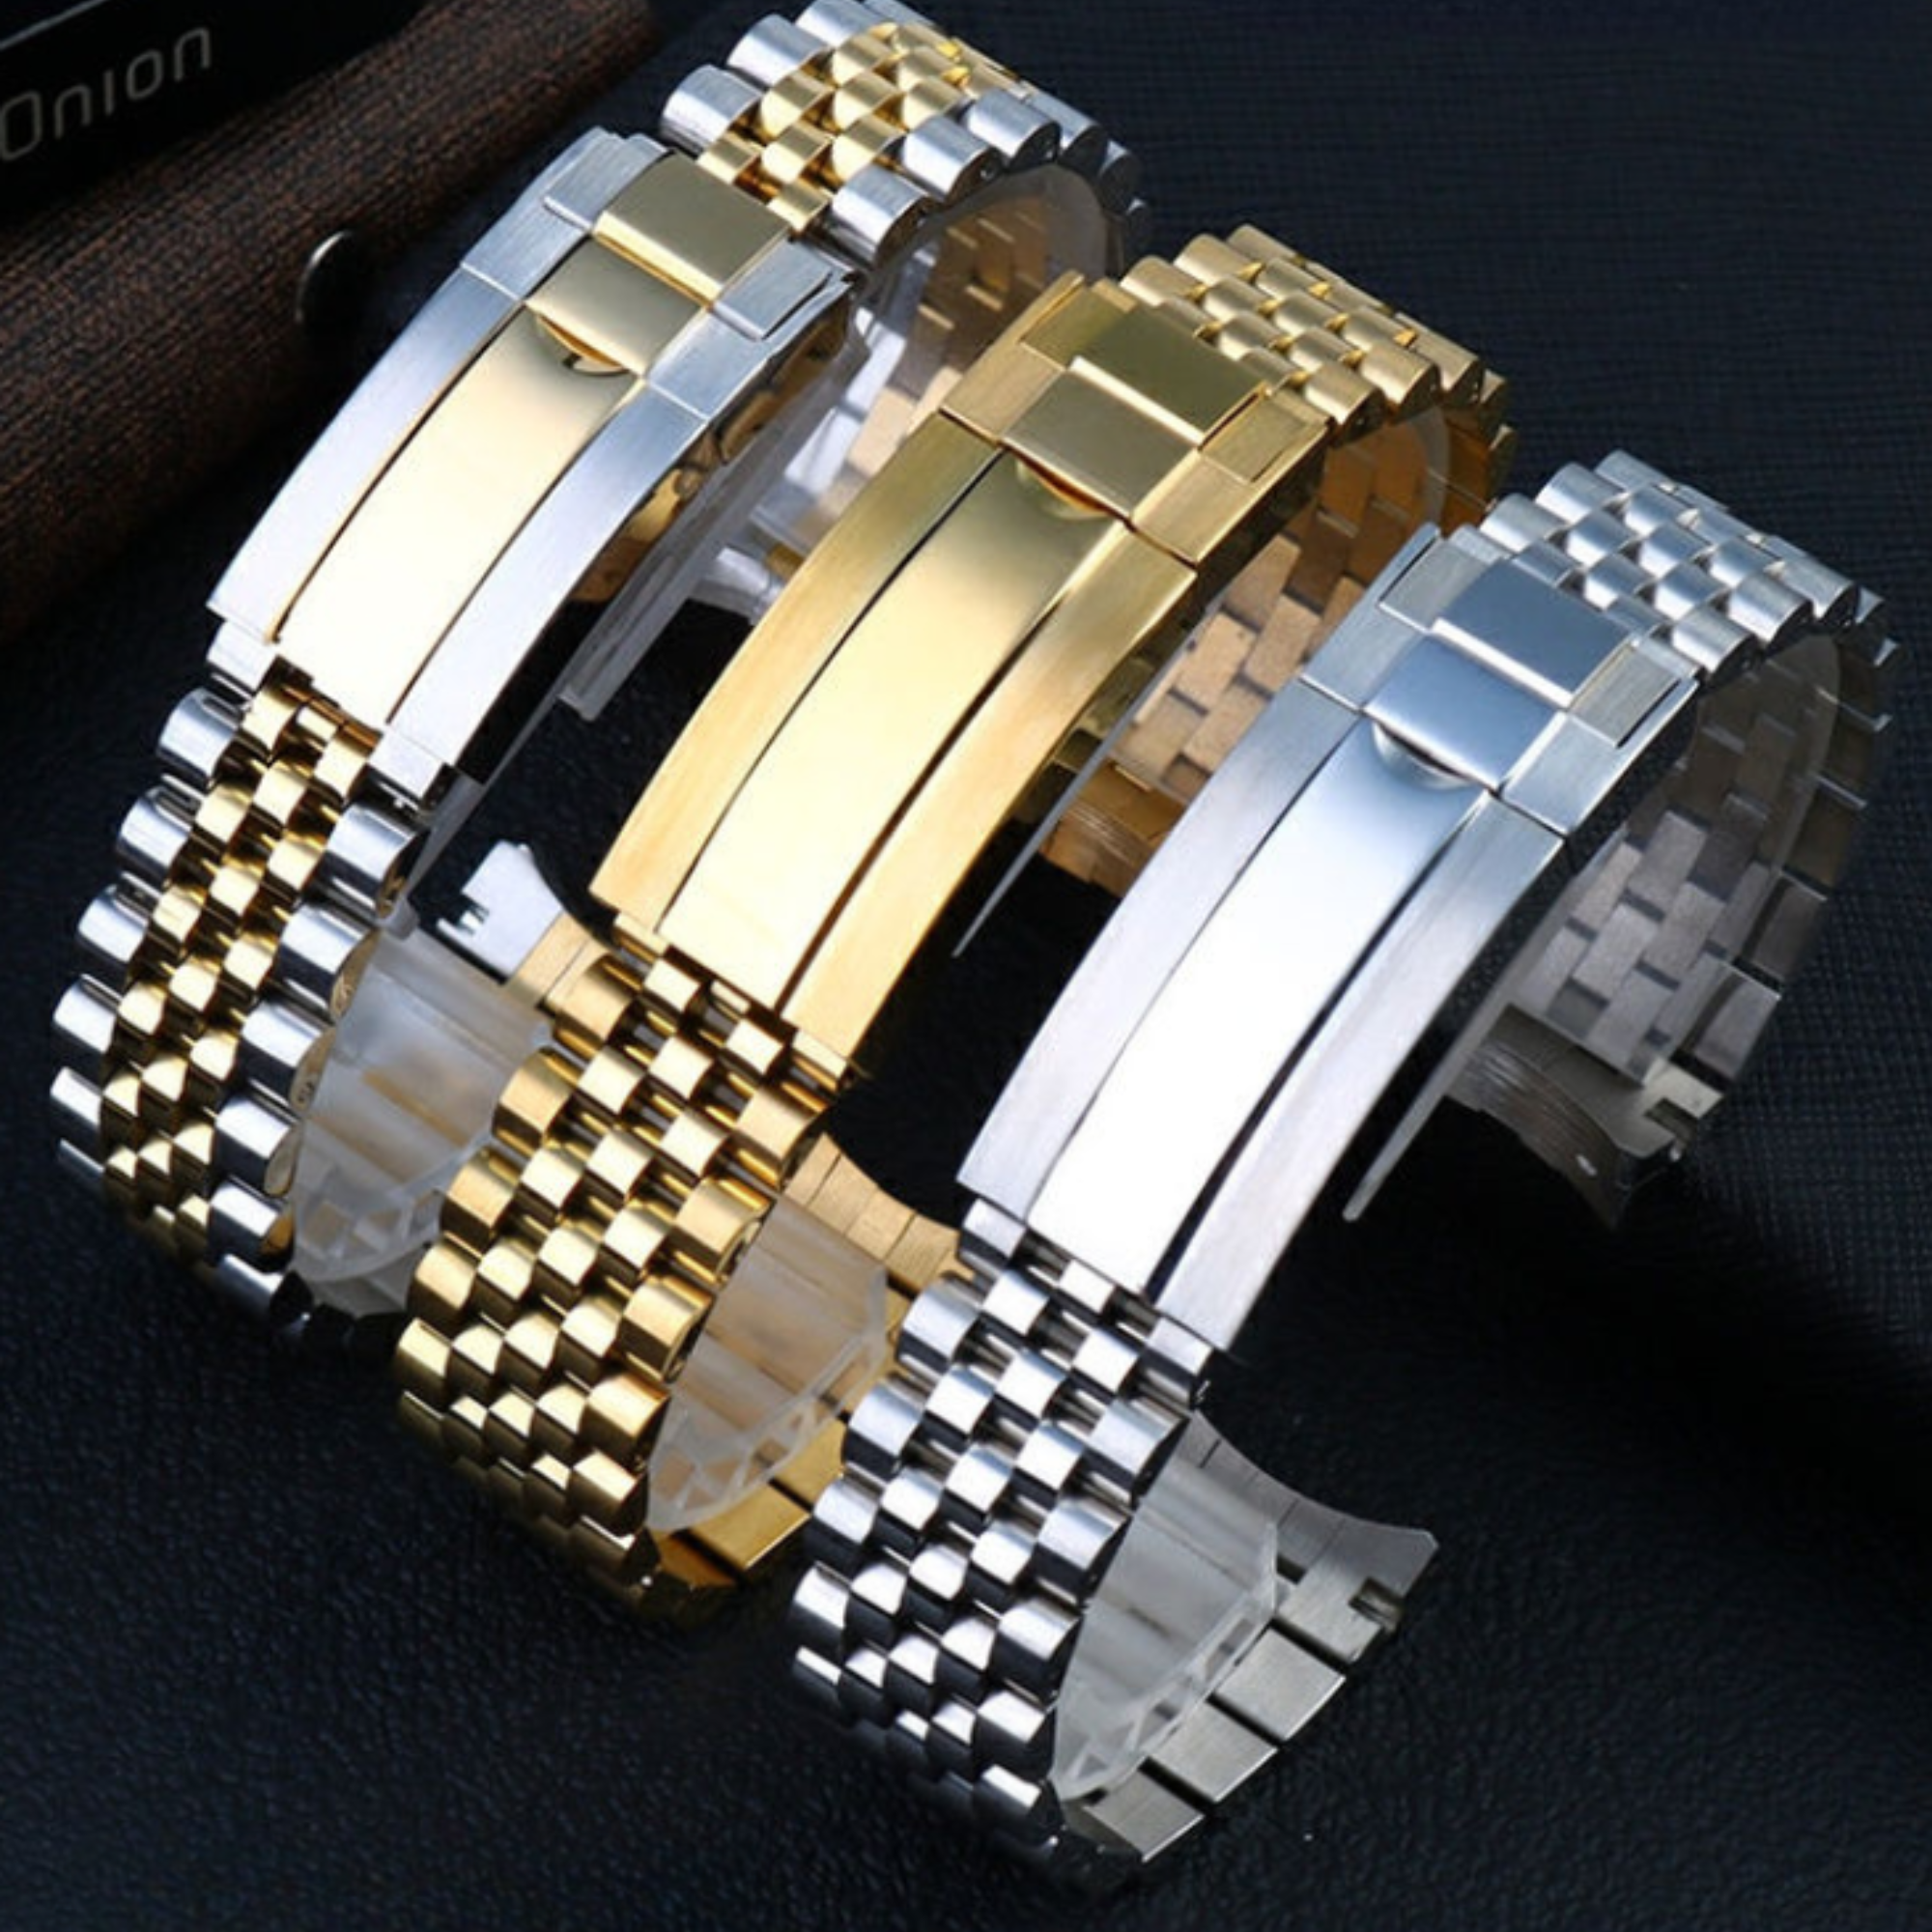 20mm Stainless Steel Vintage Jubilee Watch Band Wristband Bracelet Strap - Golden steel jubilee watch bracelet strap india dream watches